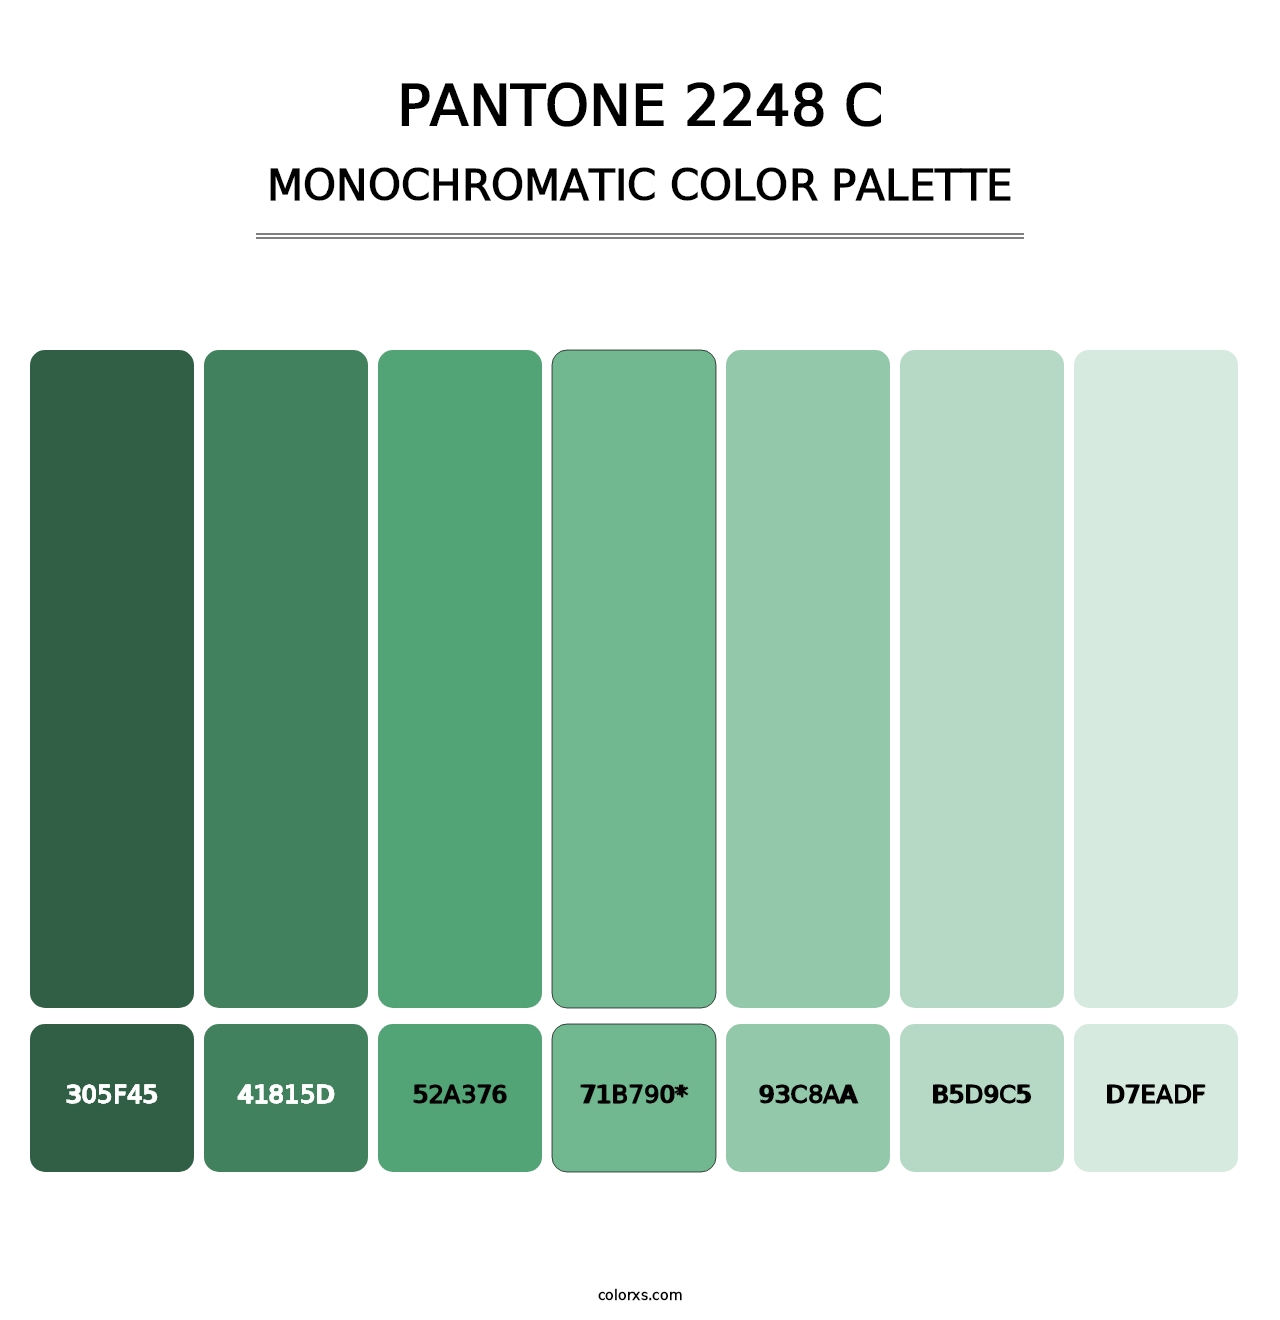 PANTONE 2248 C - Monochromatic Color Palette